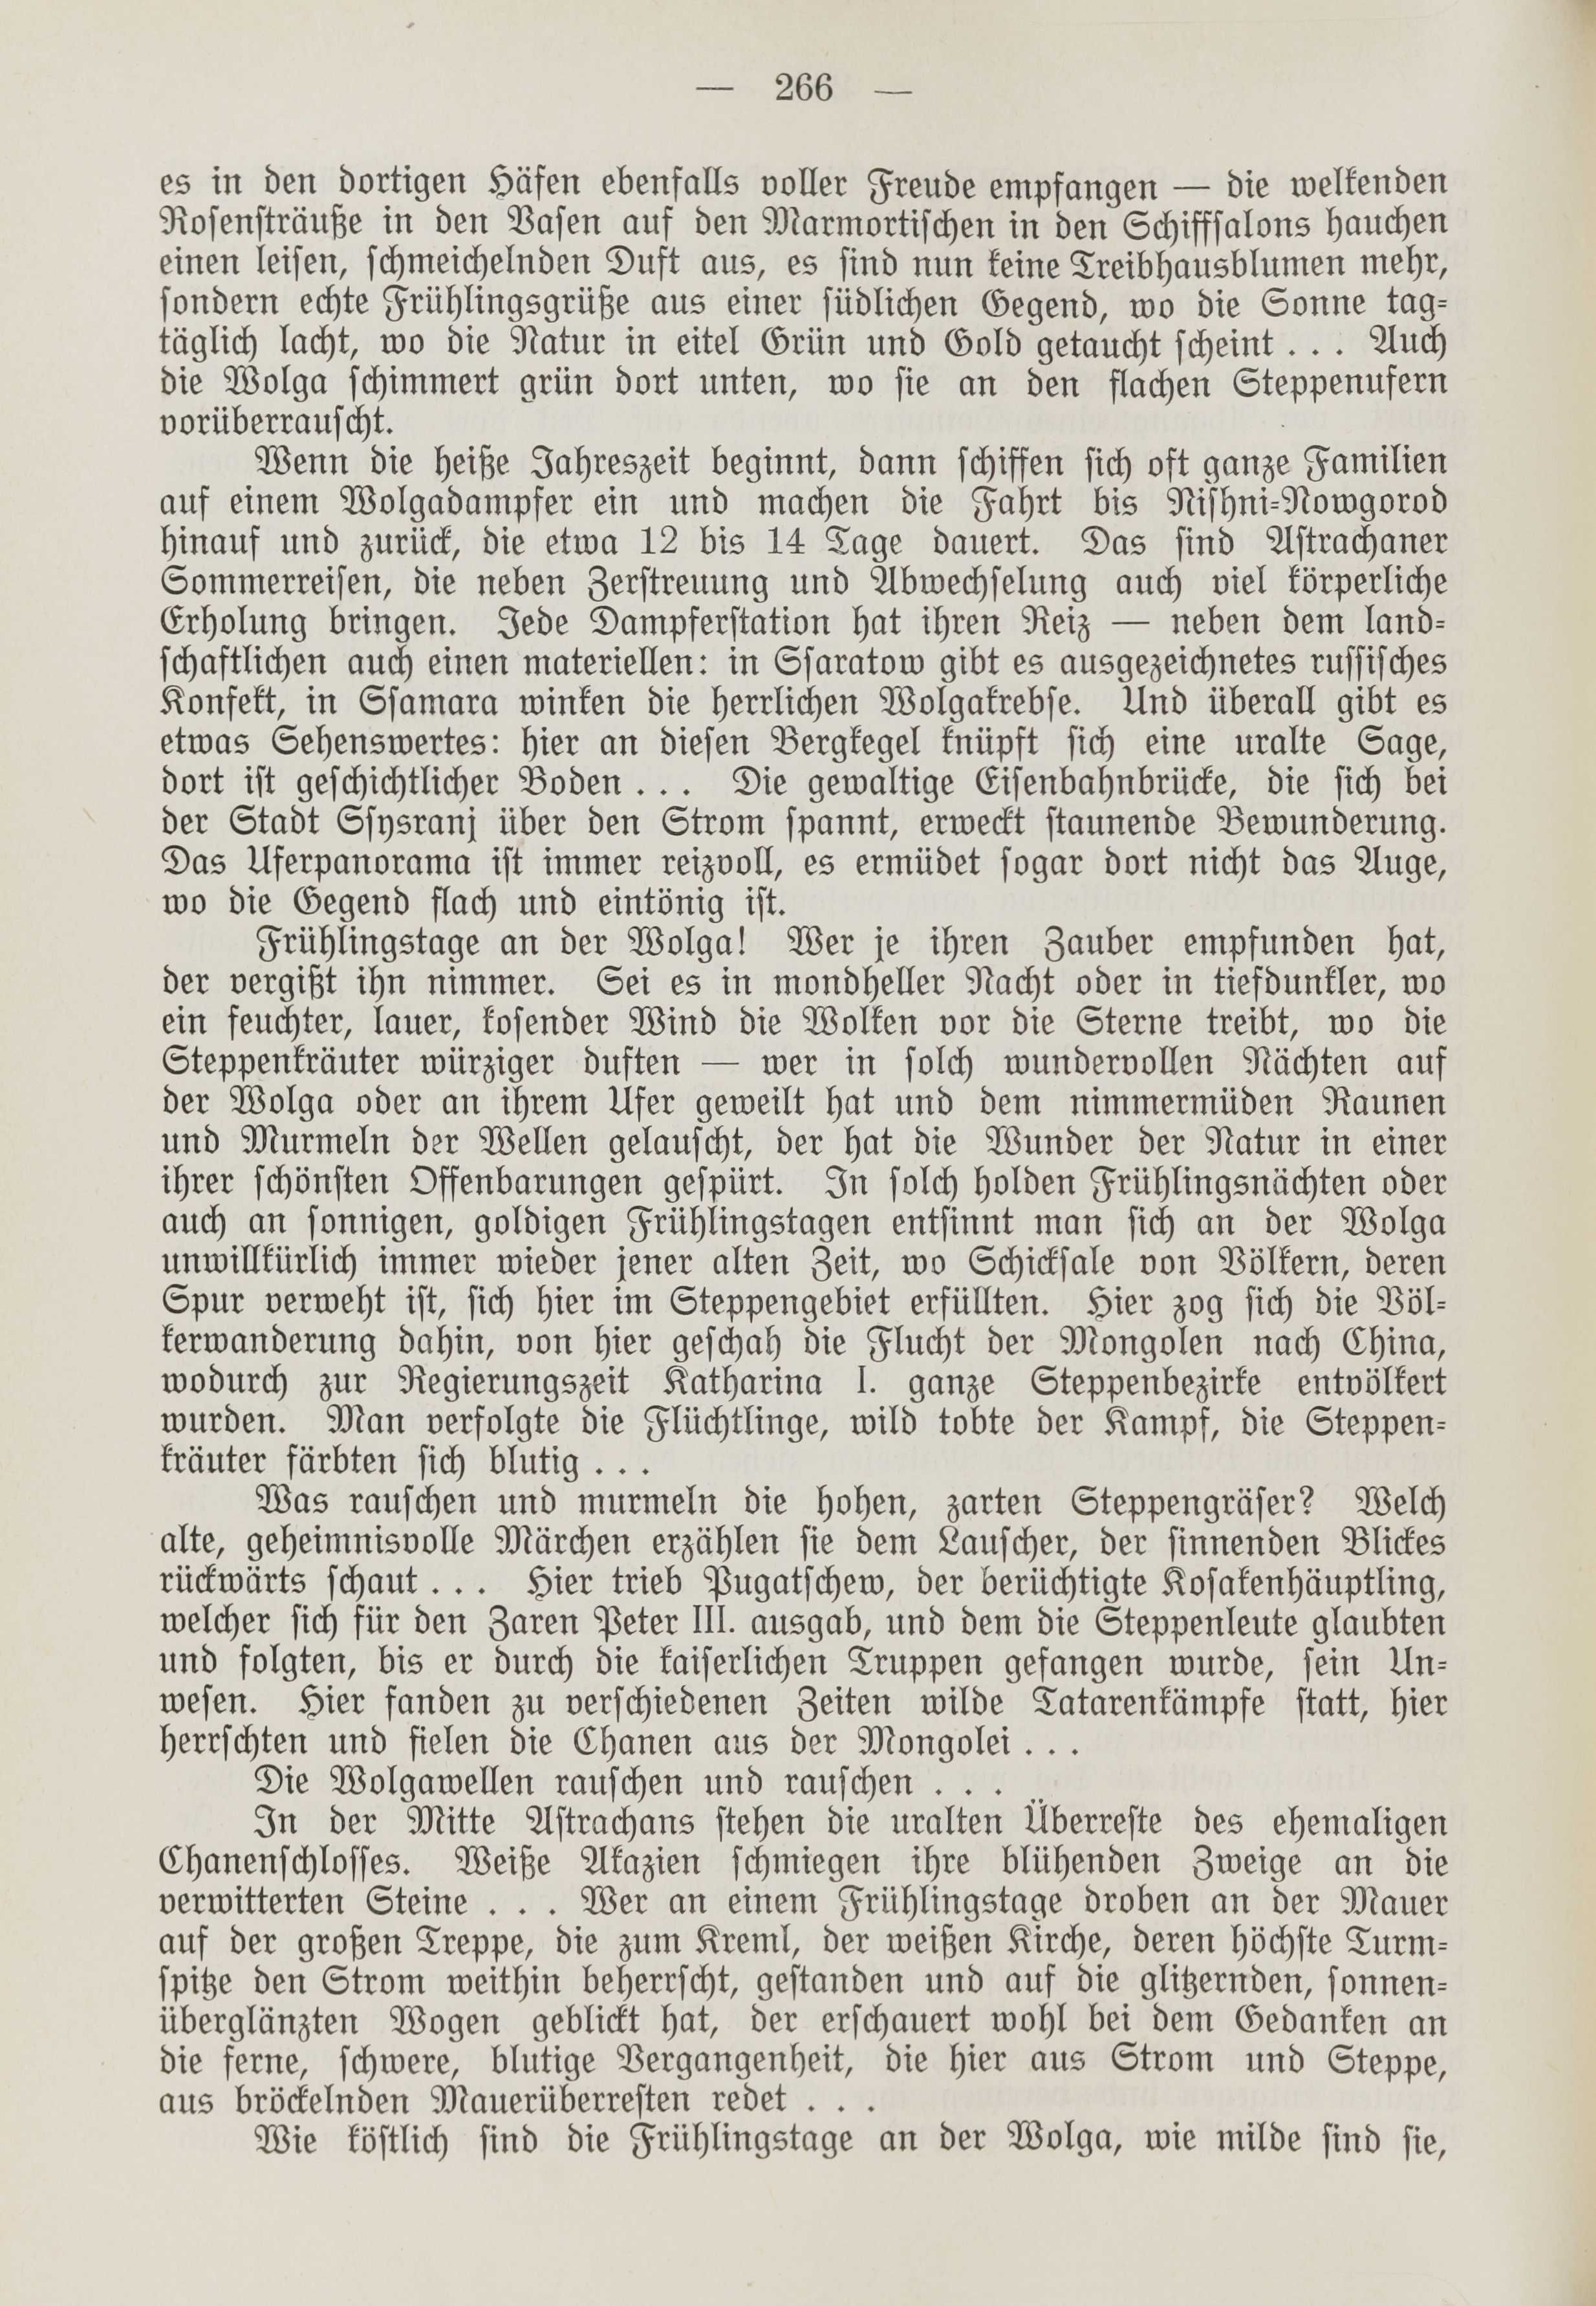 Deutsche Monatsschrift für Russland [1] (1912) | 274. (266) Haupttext